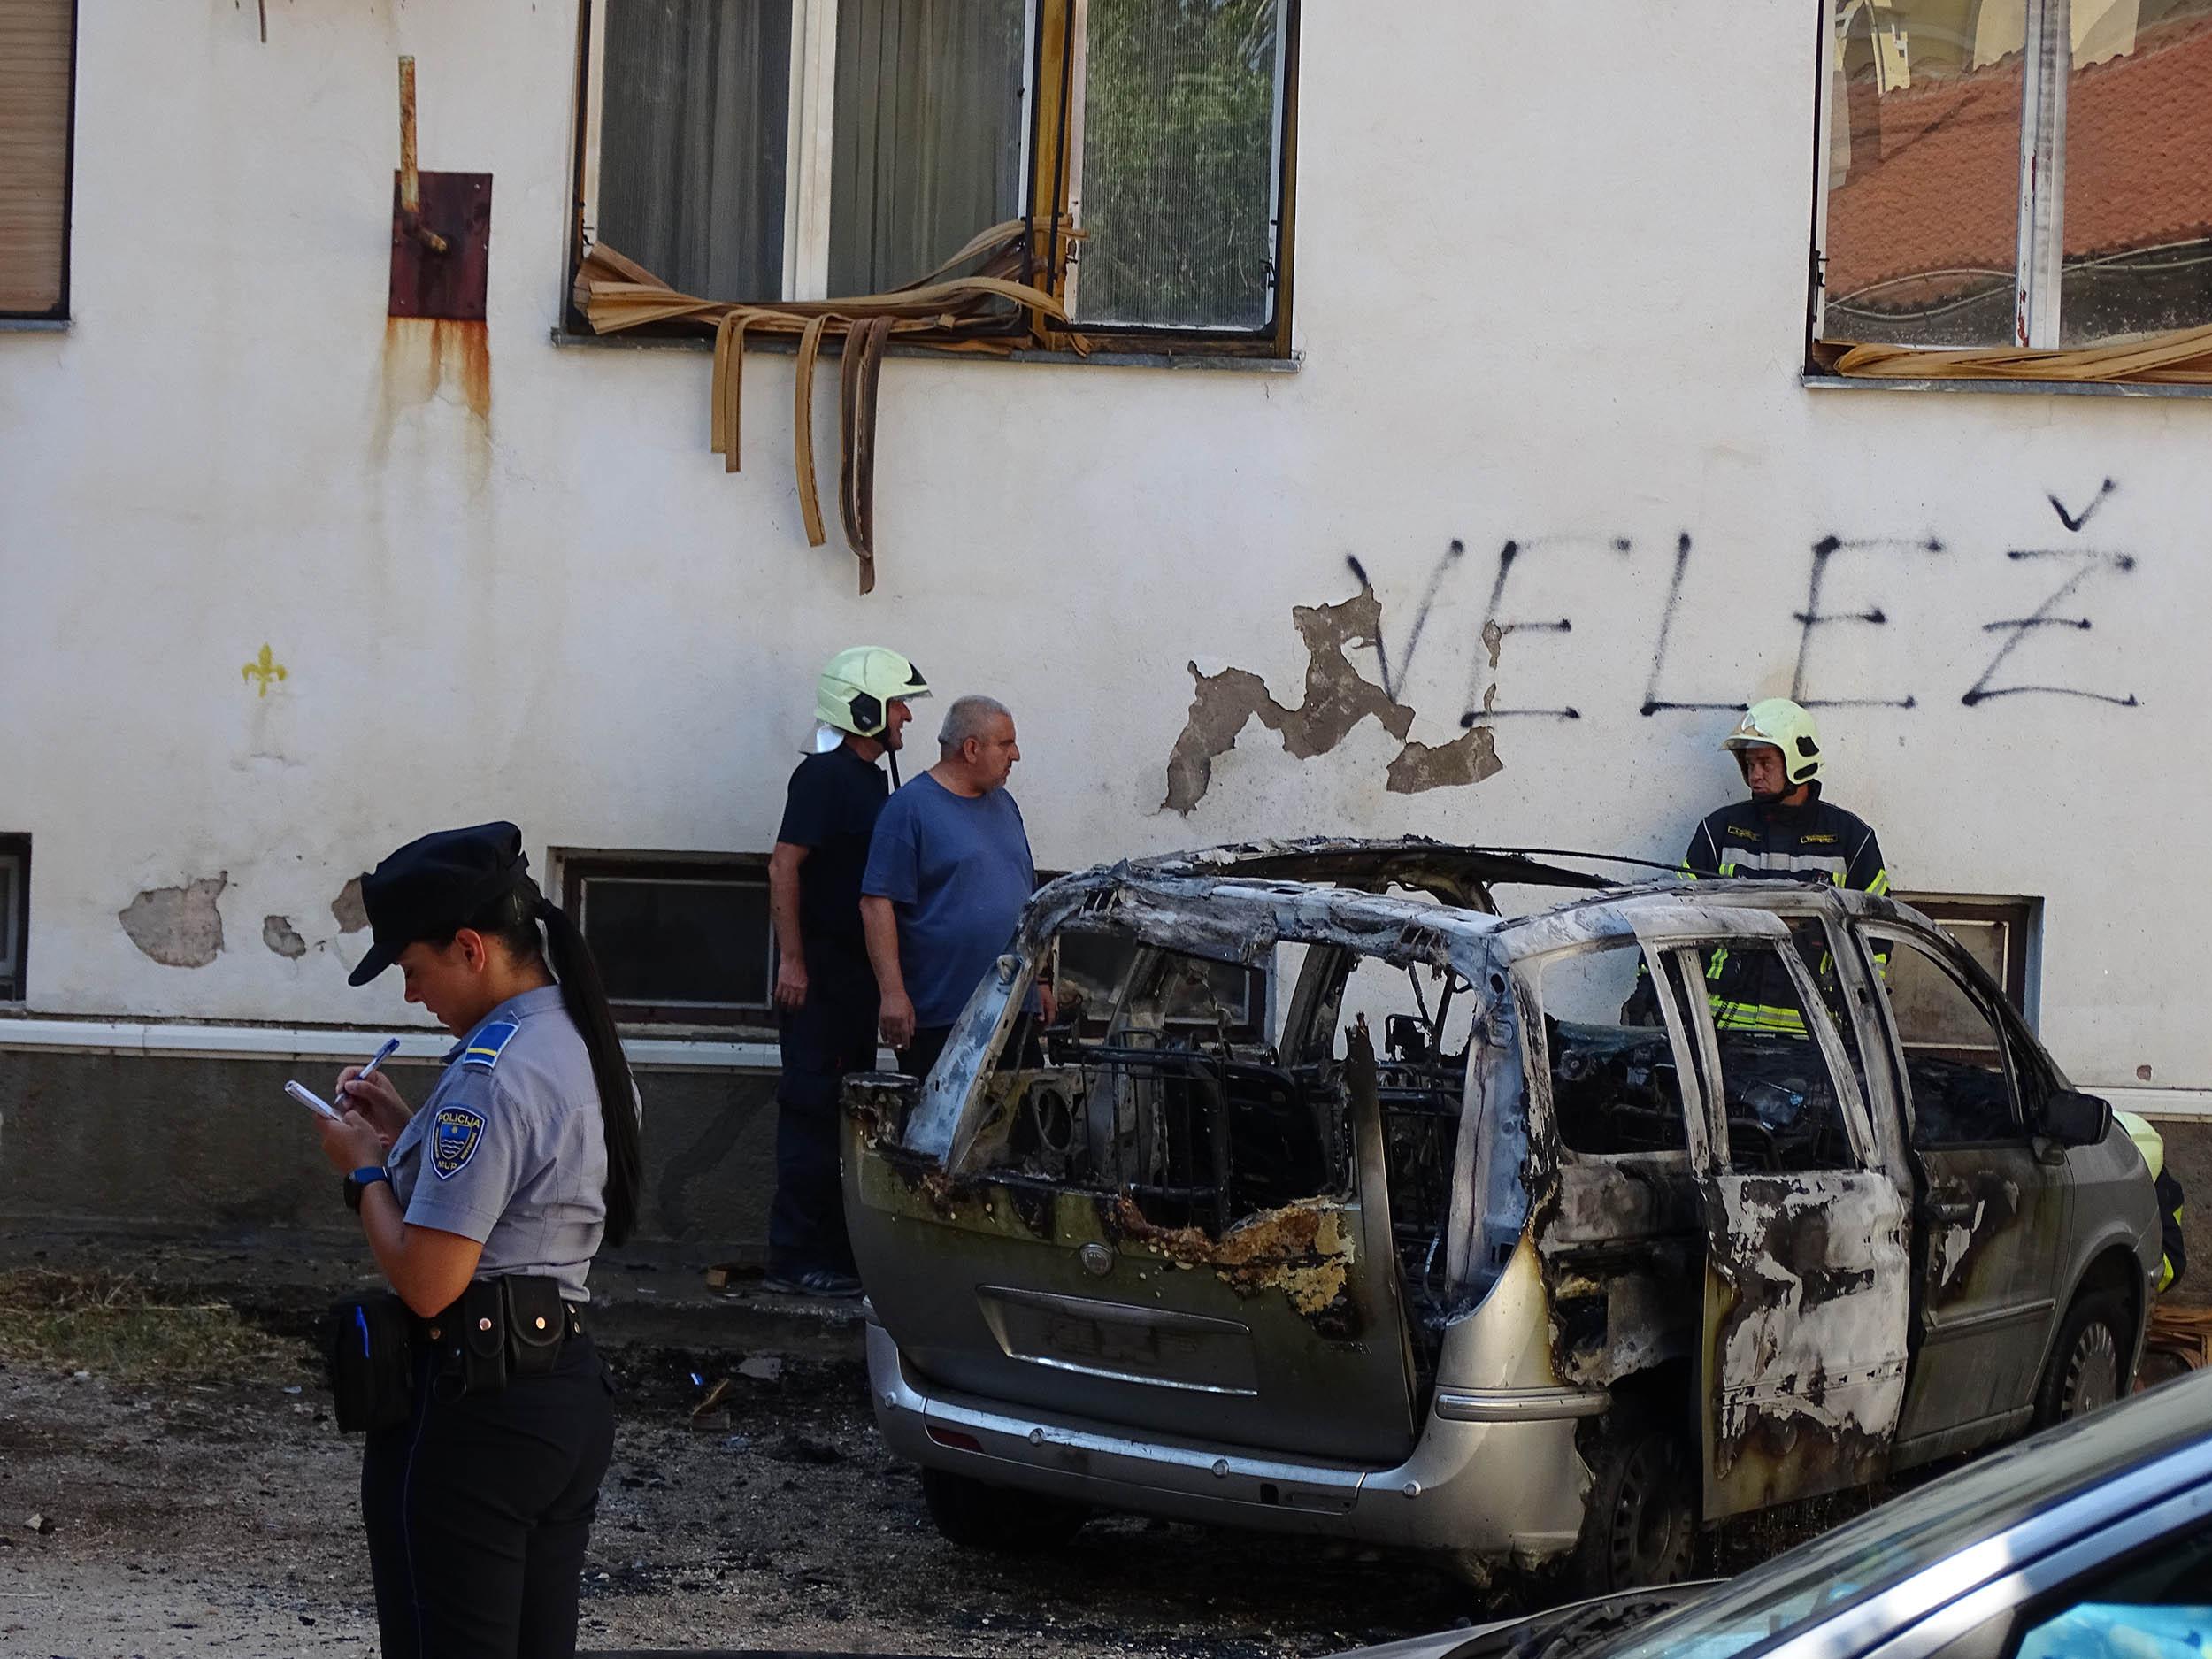 Nova eksplozija u Mostaru: Nakon strahovite detonacije planuo automobil, vatra zahvatila i prozor stana